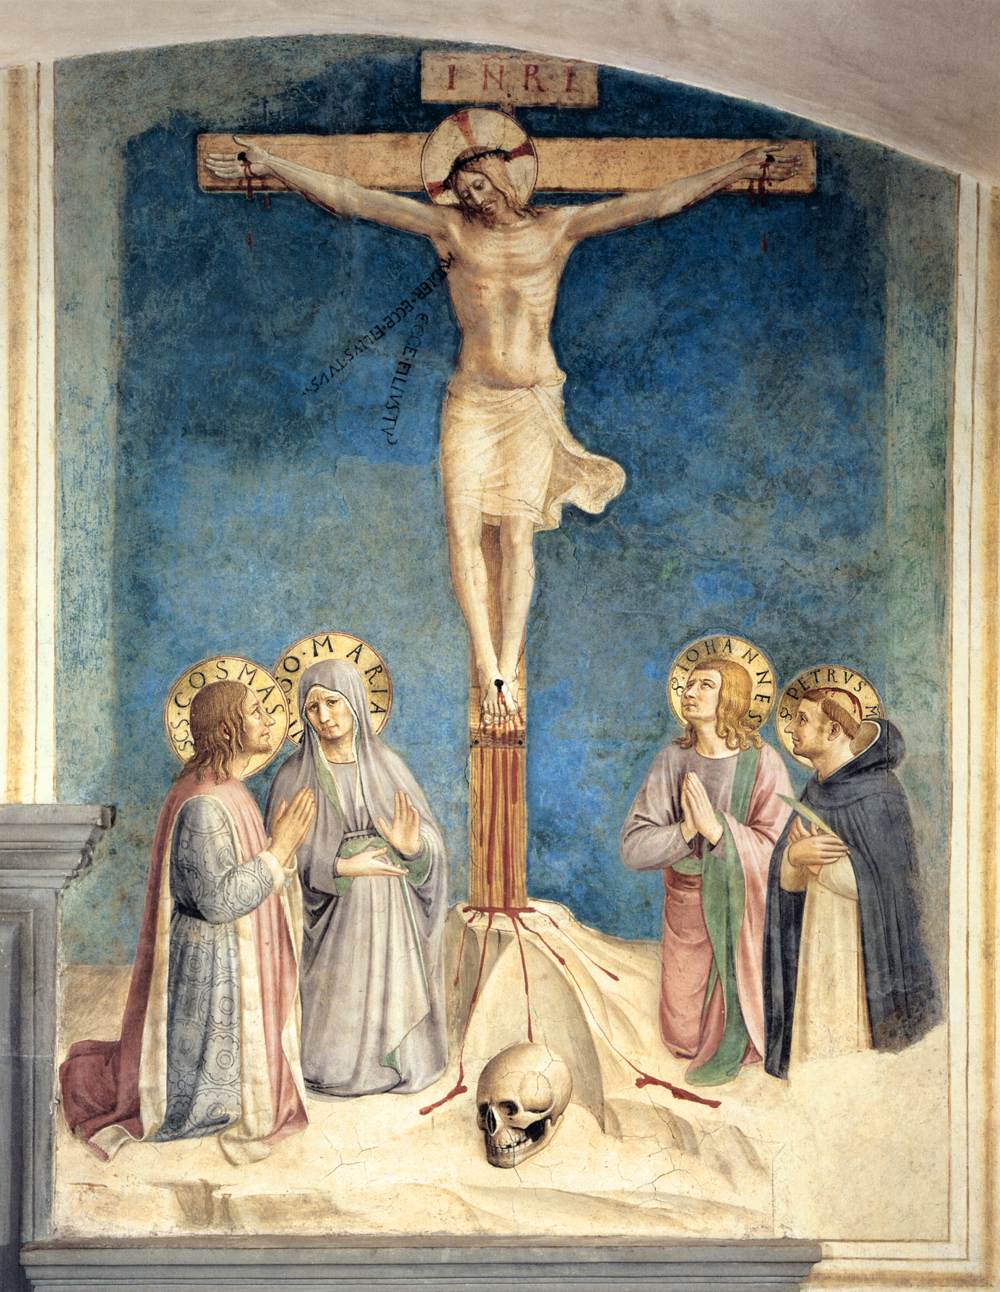 De kruisiging met de Virgen en San Cosme, Juan de evangelist en Pedro Mártir (Cell 38)